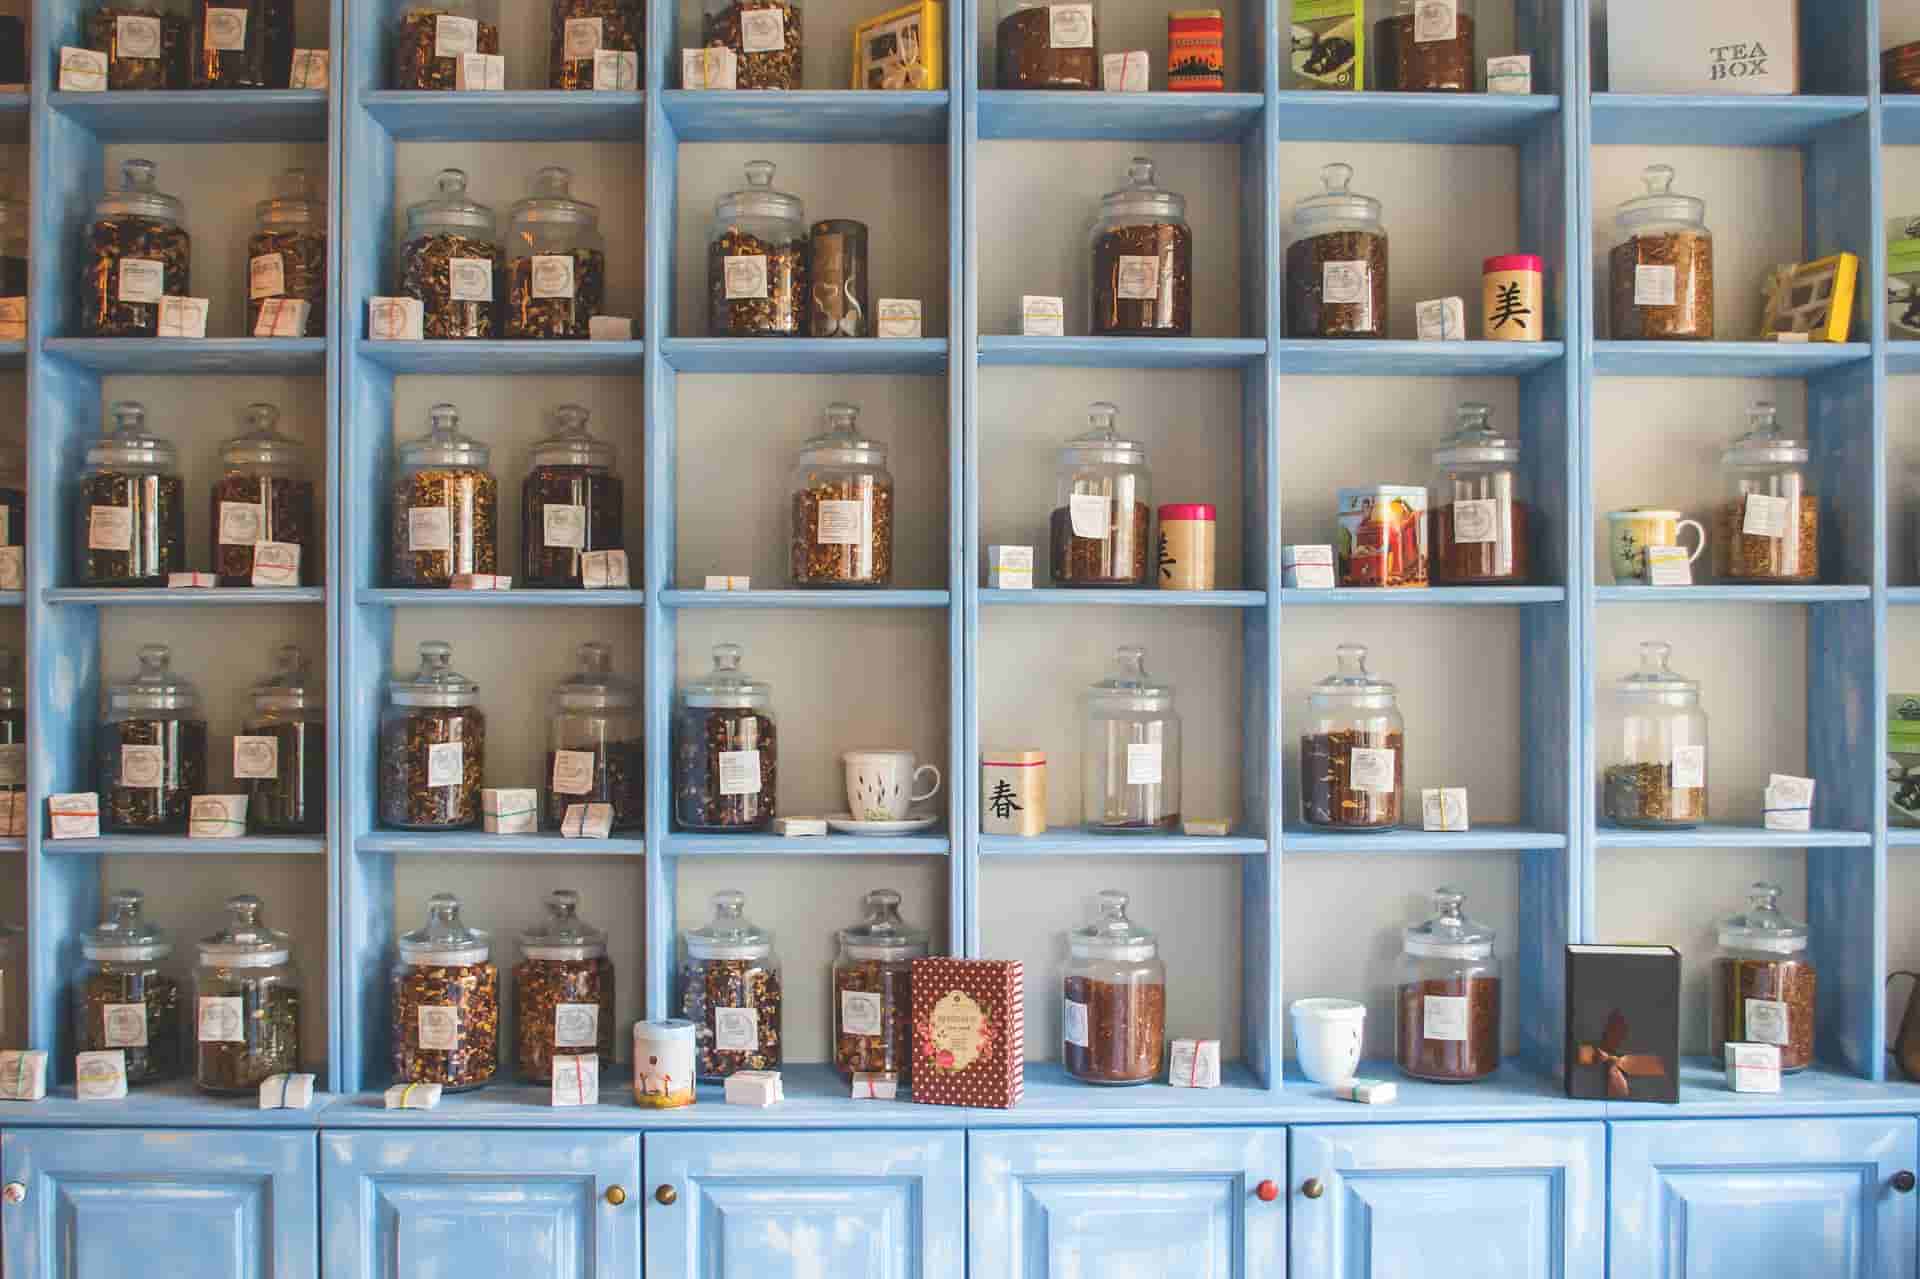 Jars of herbal medicine.